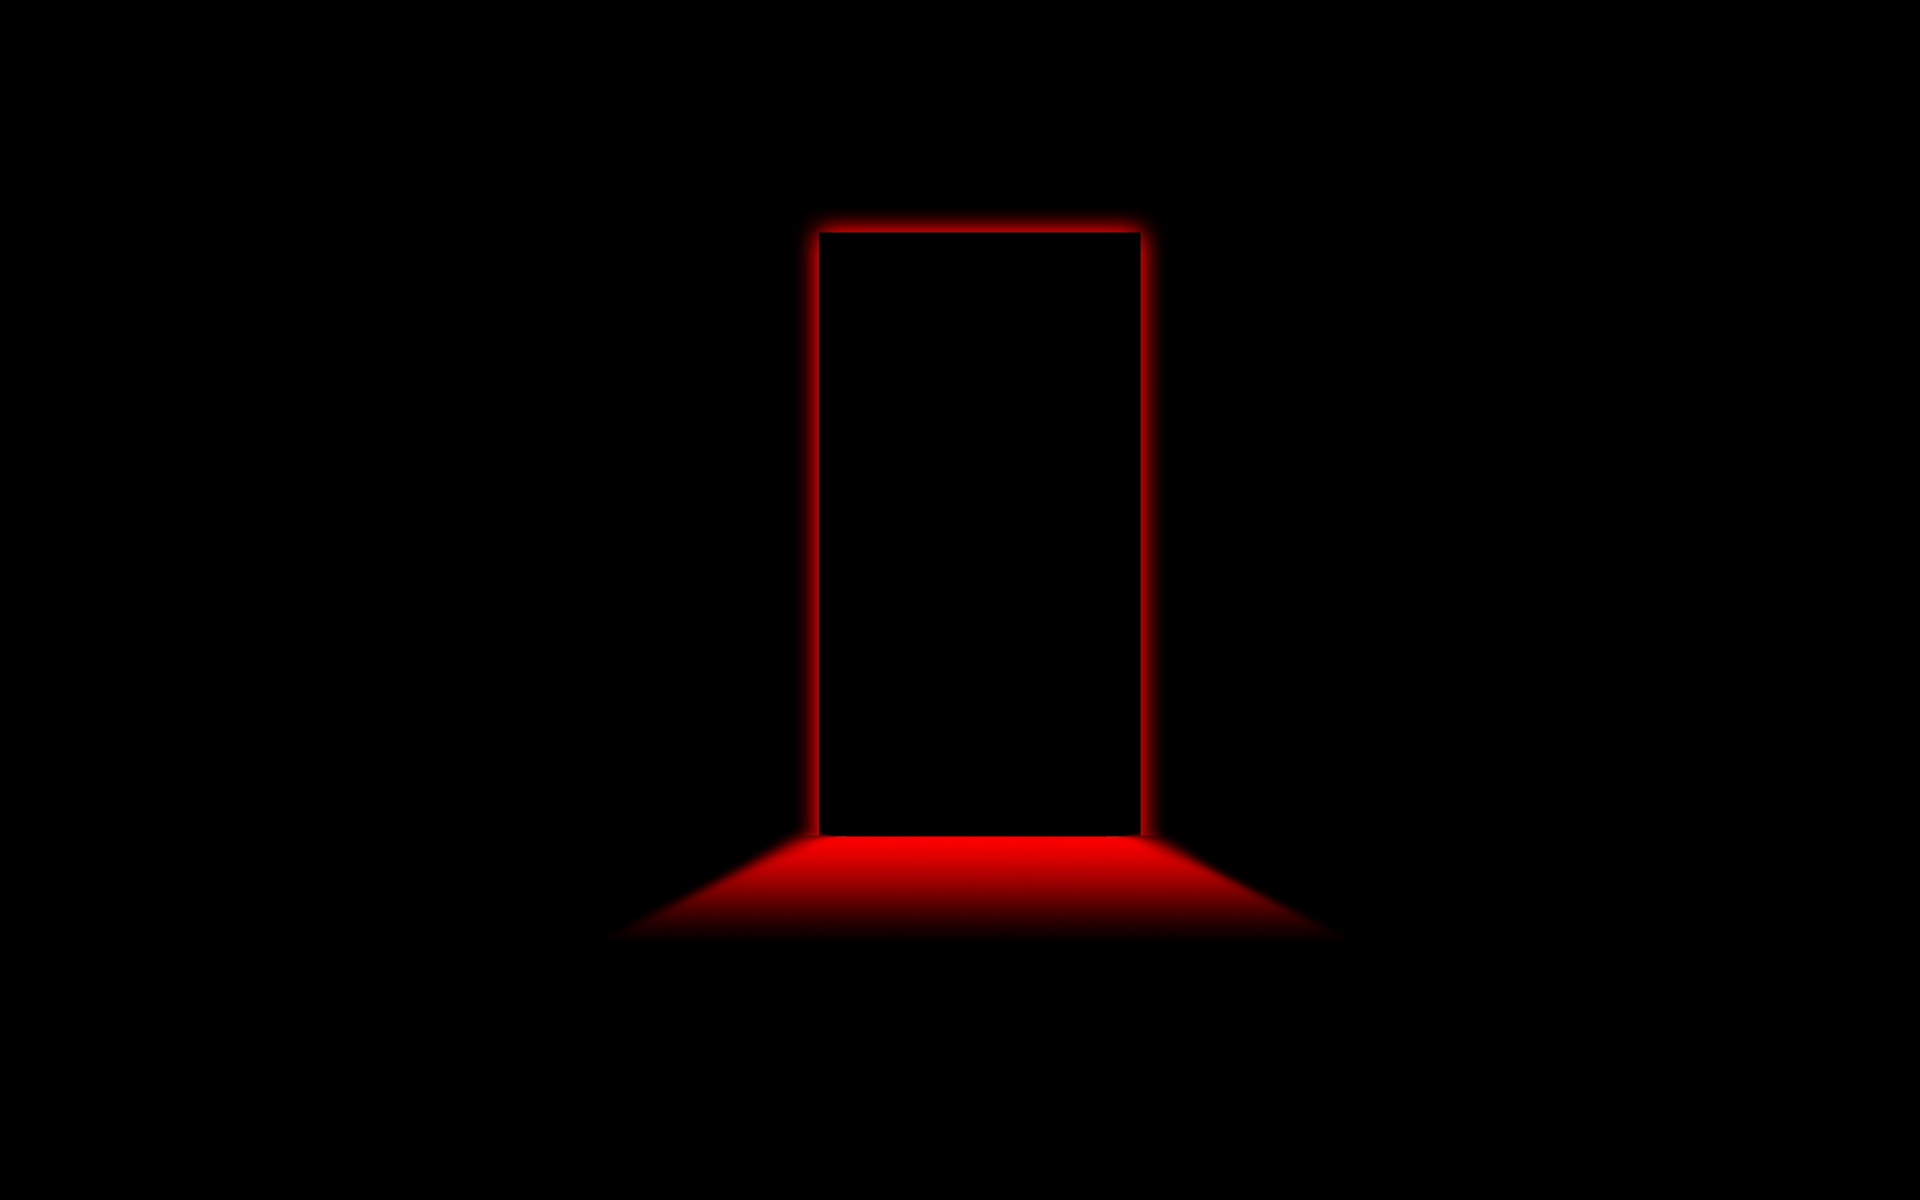 Door Red Light for 1920 x 1200 widescreen resolution